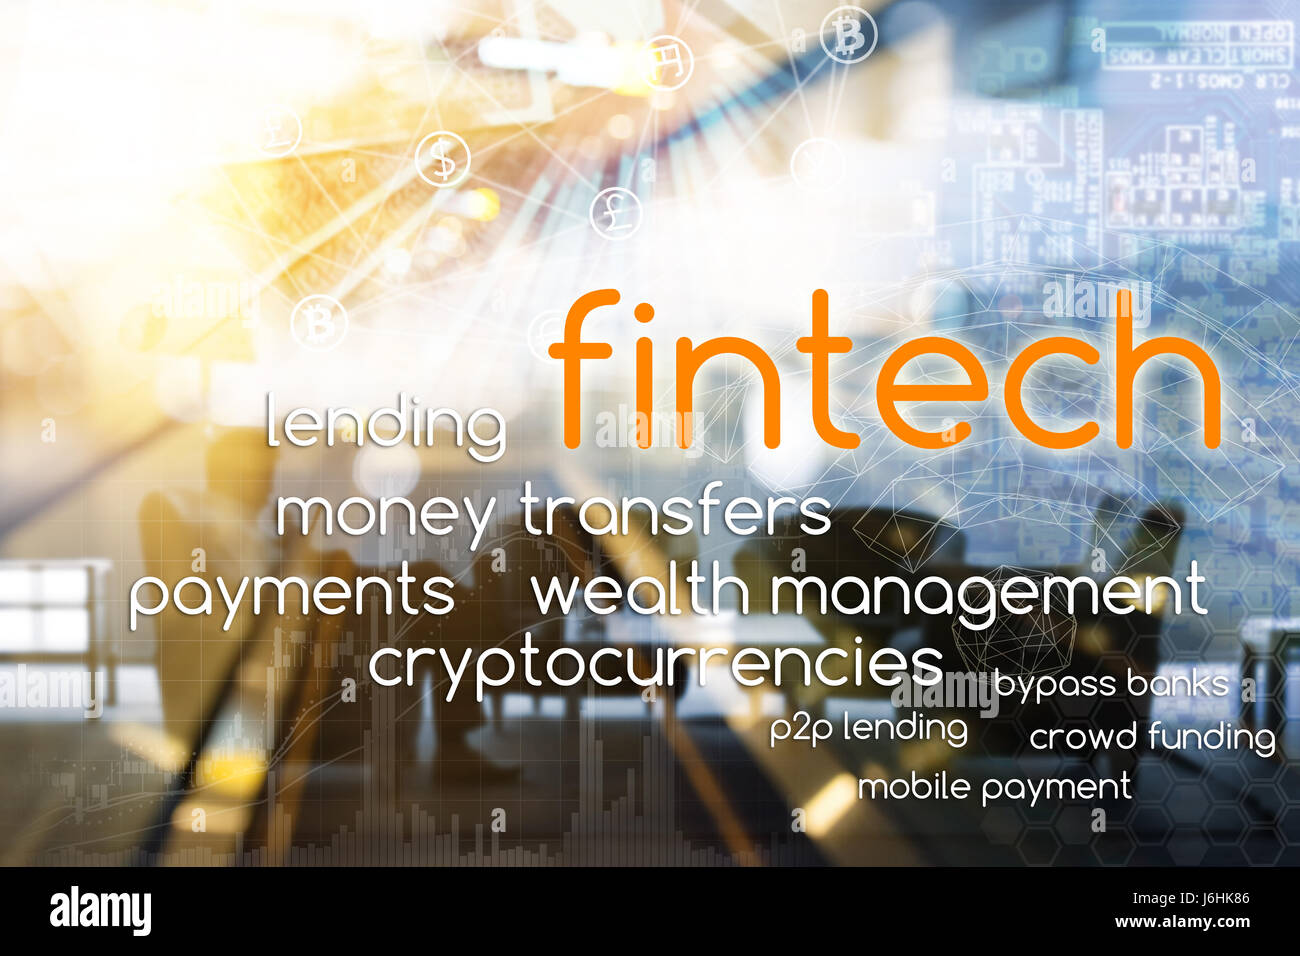 La technologie de l'Internet financier Investissement Fintech Concept. En tête, les transferts d'argent, paiements, gestion de patrimoine, cryptocurrencies, p2p, mobile de premier plan Banque D'Images